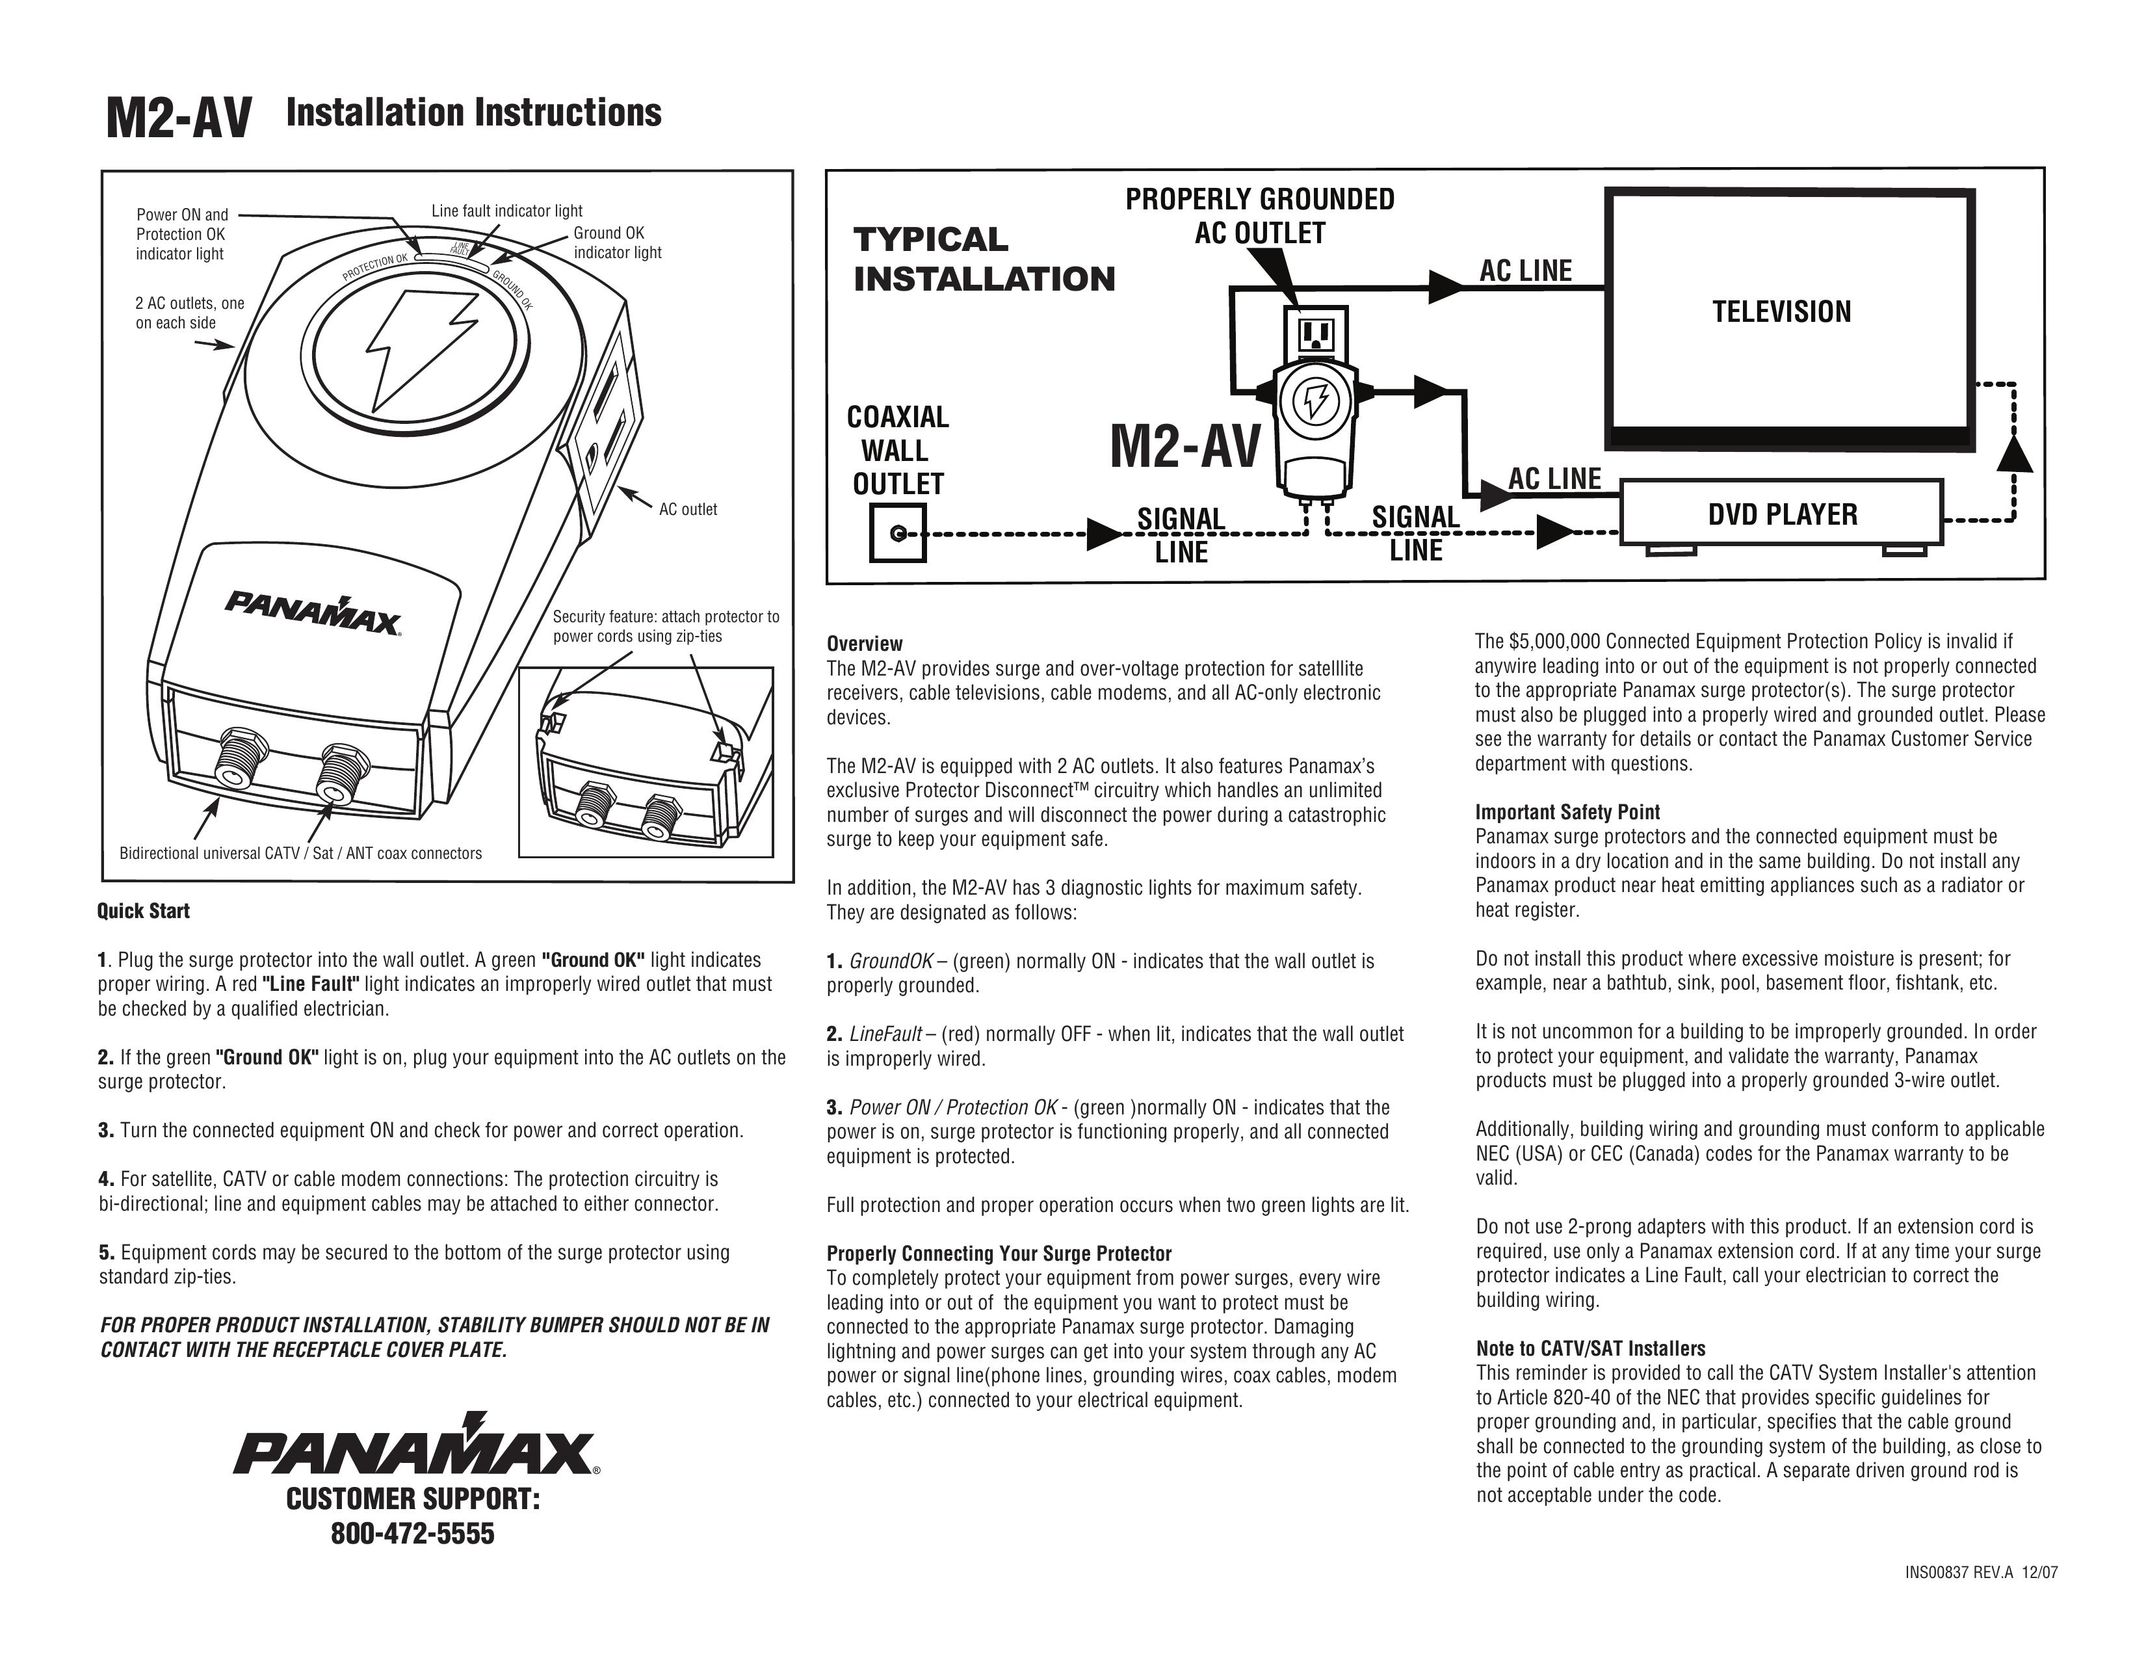 Panamax M2-av Surge Protector User Manual